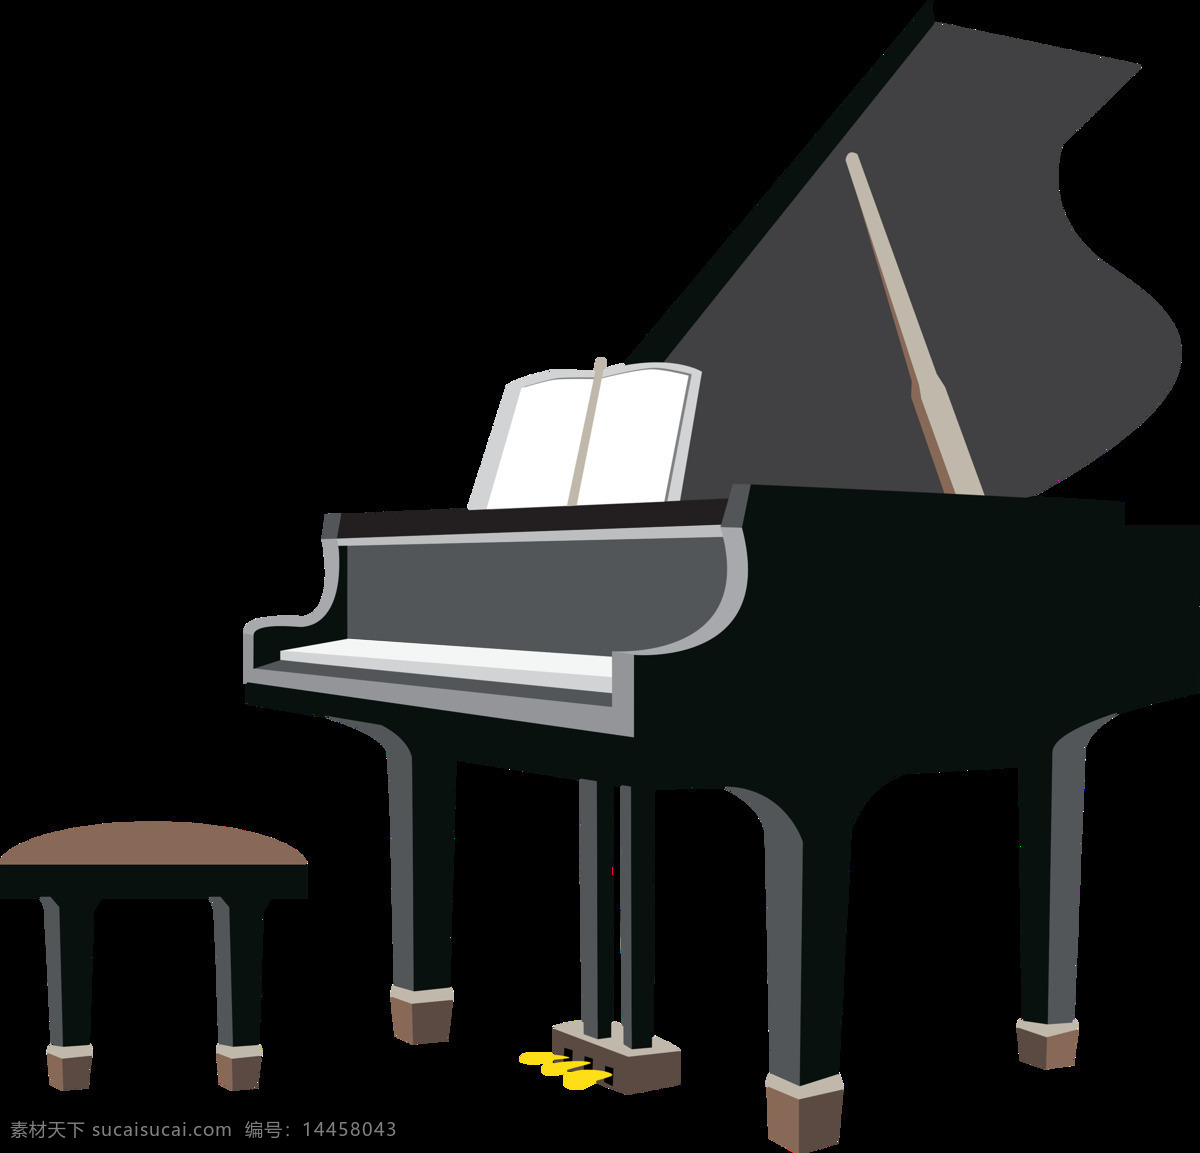 黑色 卡通 钢琴 元素 儿童弹钢琴 钢琴海报 钢琴培训 钢琴学习 钢琴音乐会 钢琴招生海报 卡通钢琴 少儿钢琴 学习钢琴 音乐背景 音乐素材 音乐图片 音乐元素